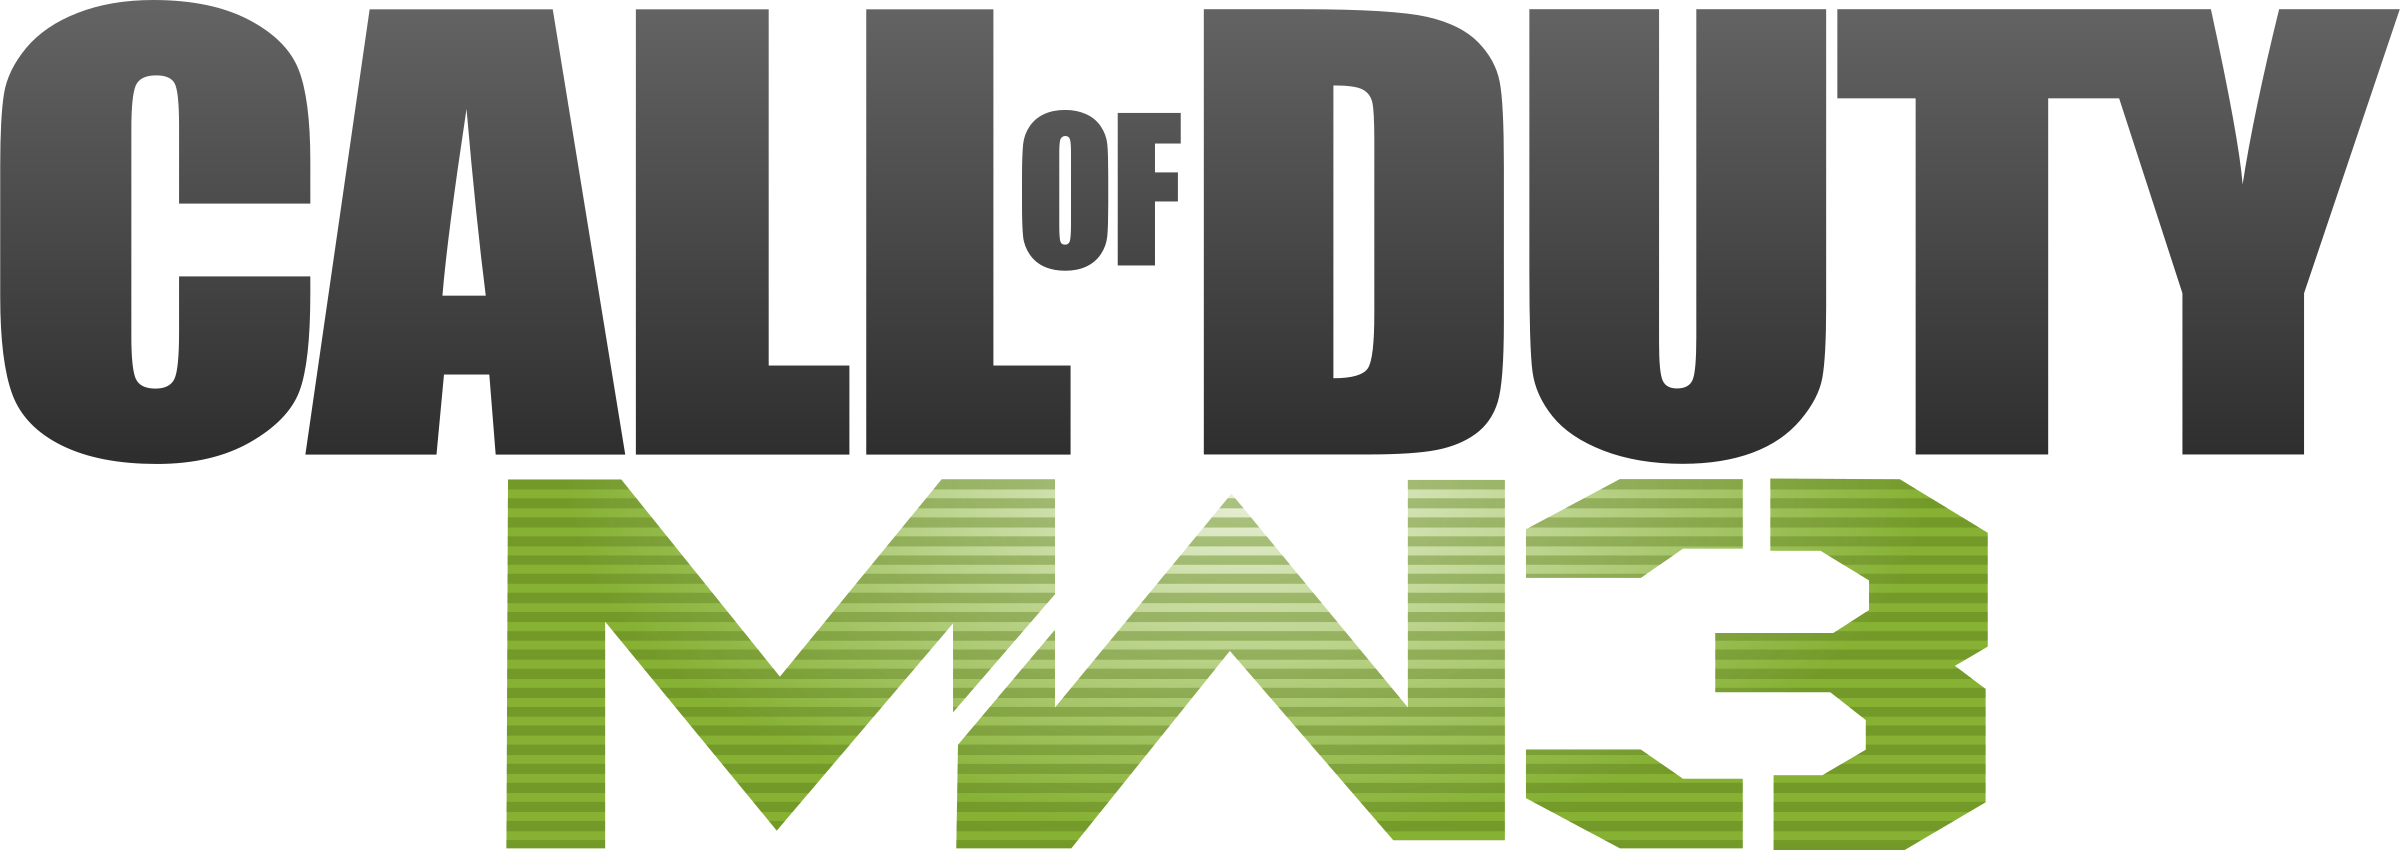 Call of Duty Modern Warfare Logo Gambar Transparan